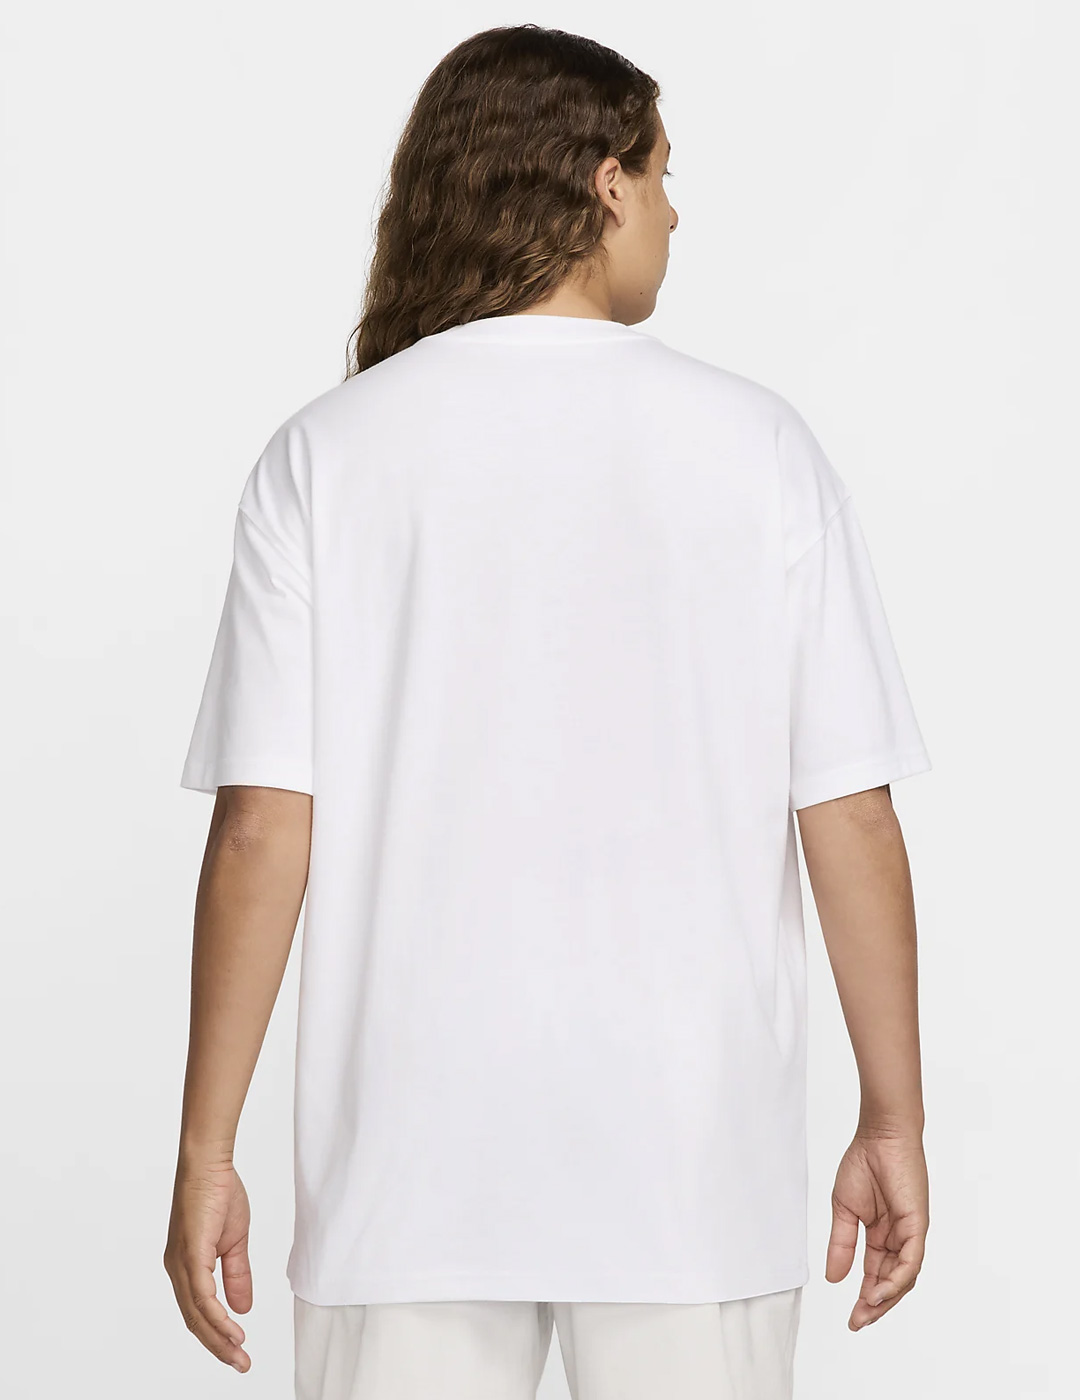 camiseta nike maga corta SPORTSWEAR MAX90 ,blanco